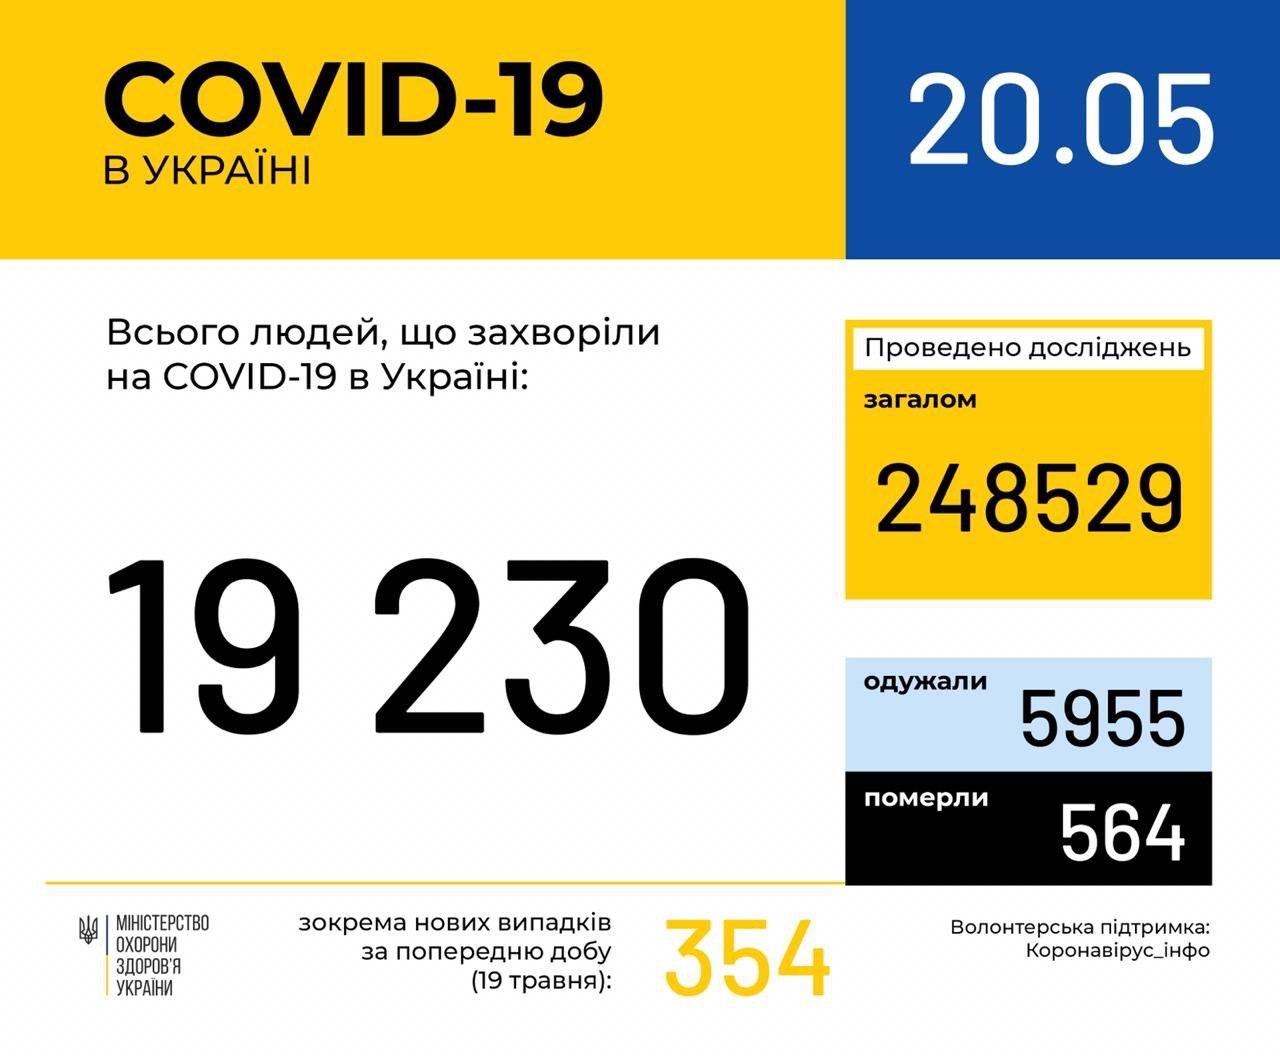 В Україні зафіксовано 19230 випадків коронавірусної хвороби COVID-19, - МОЗ